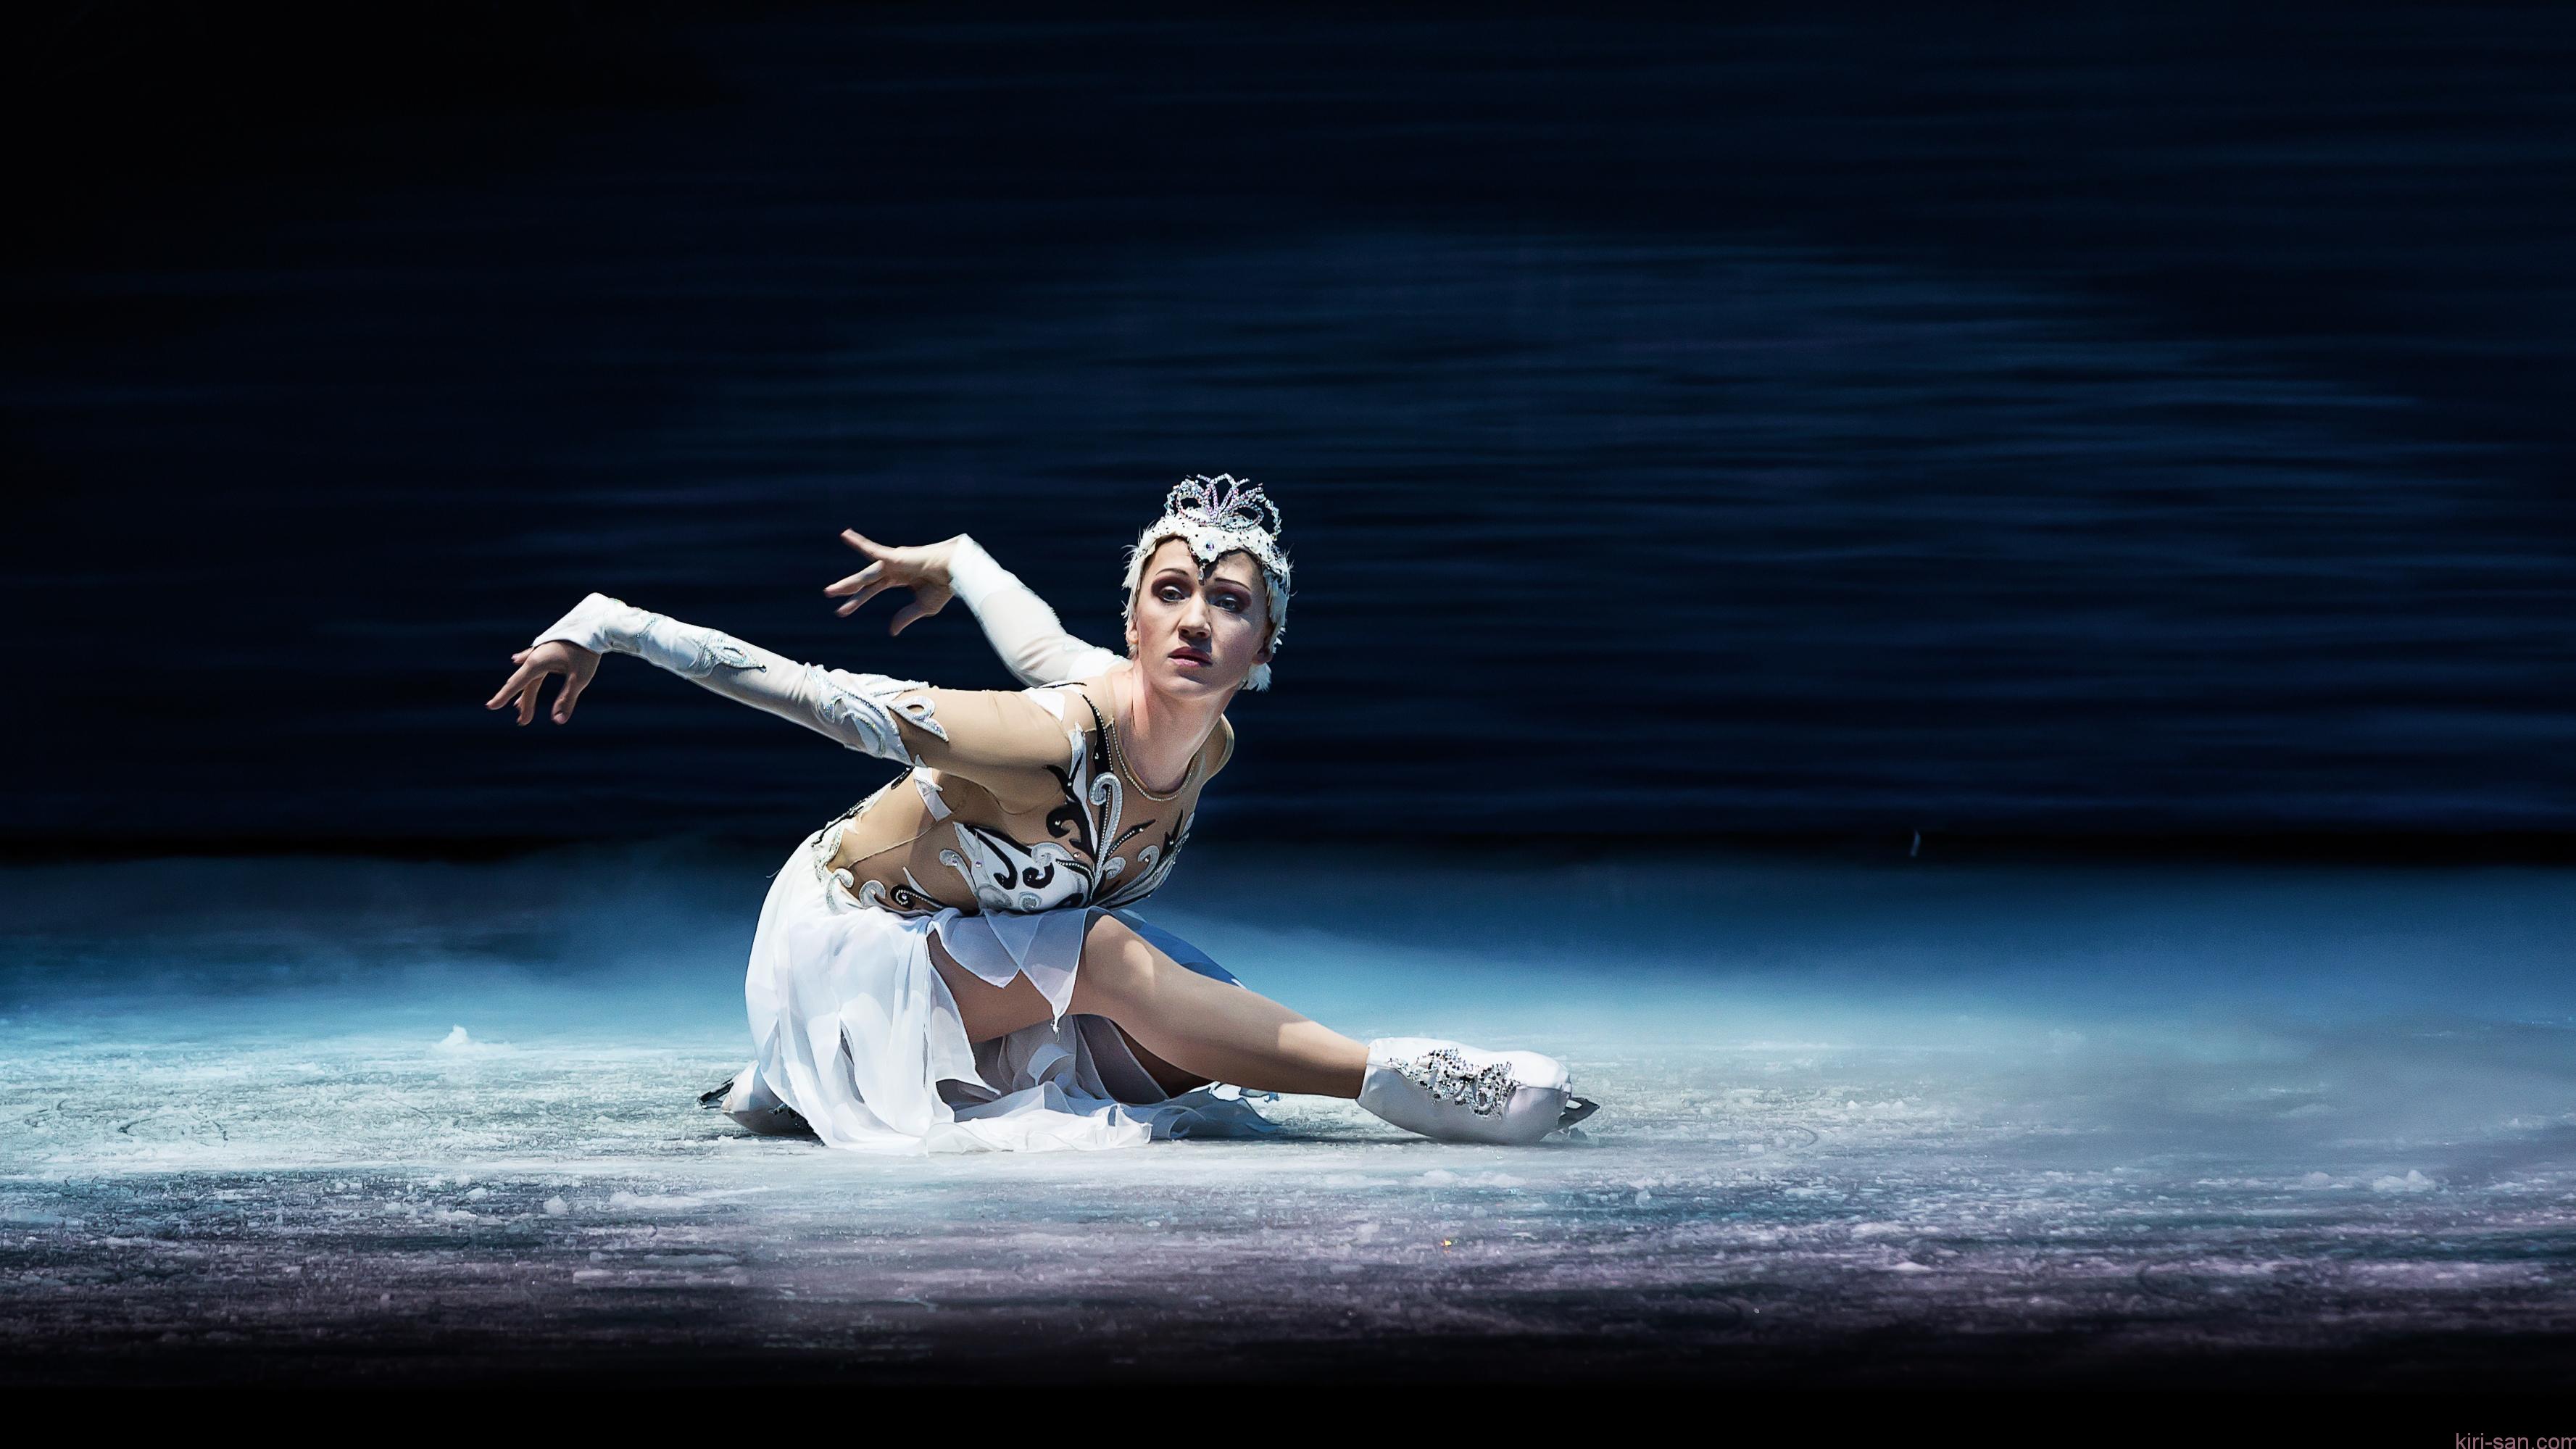 当柴可夫斯基遇上溜冰:《冰上皇族天鹅湖》风靡国际的冰上舞蹈团队